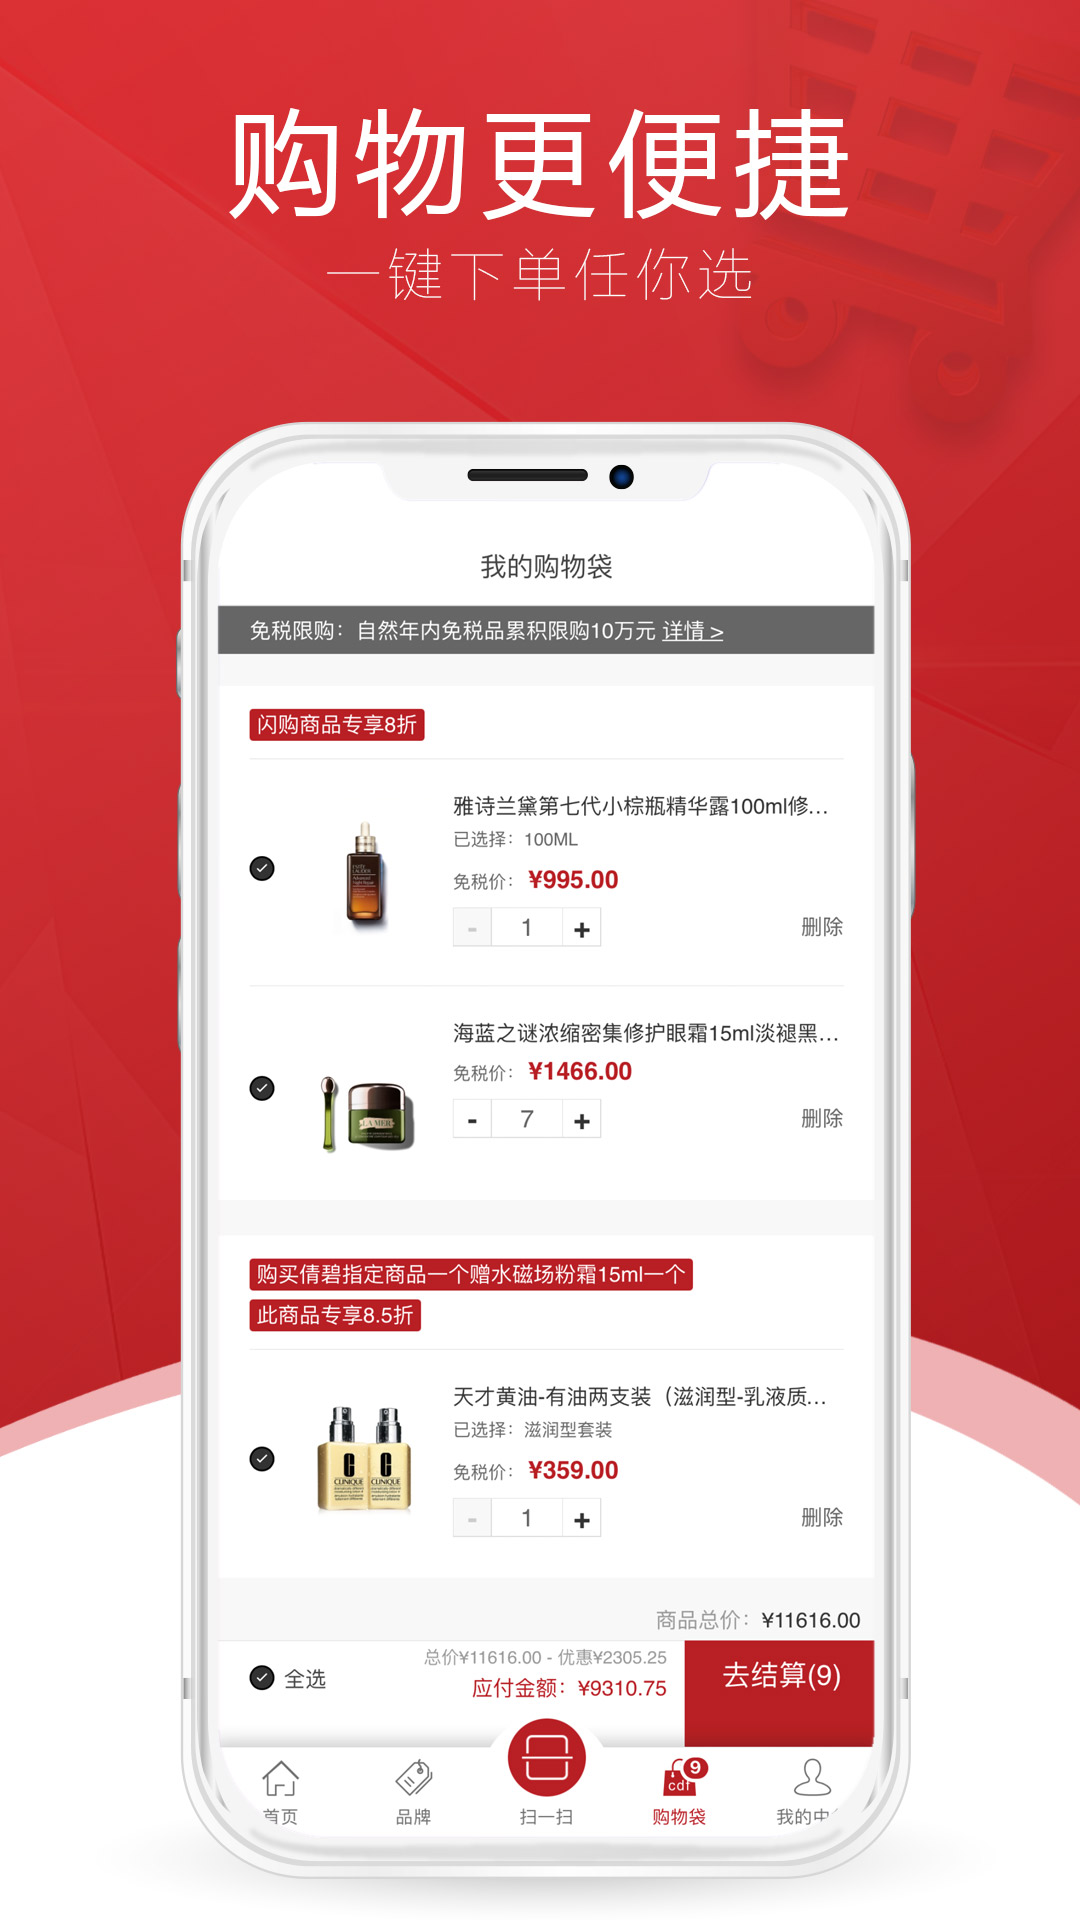 cdf海南免税app9.1.0